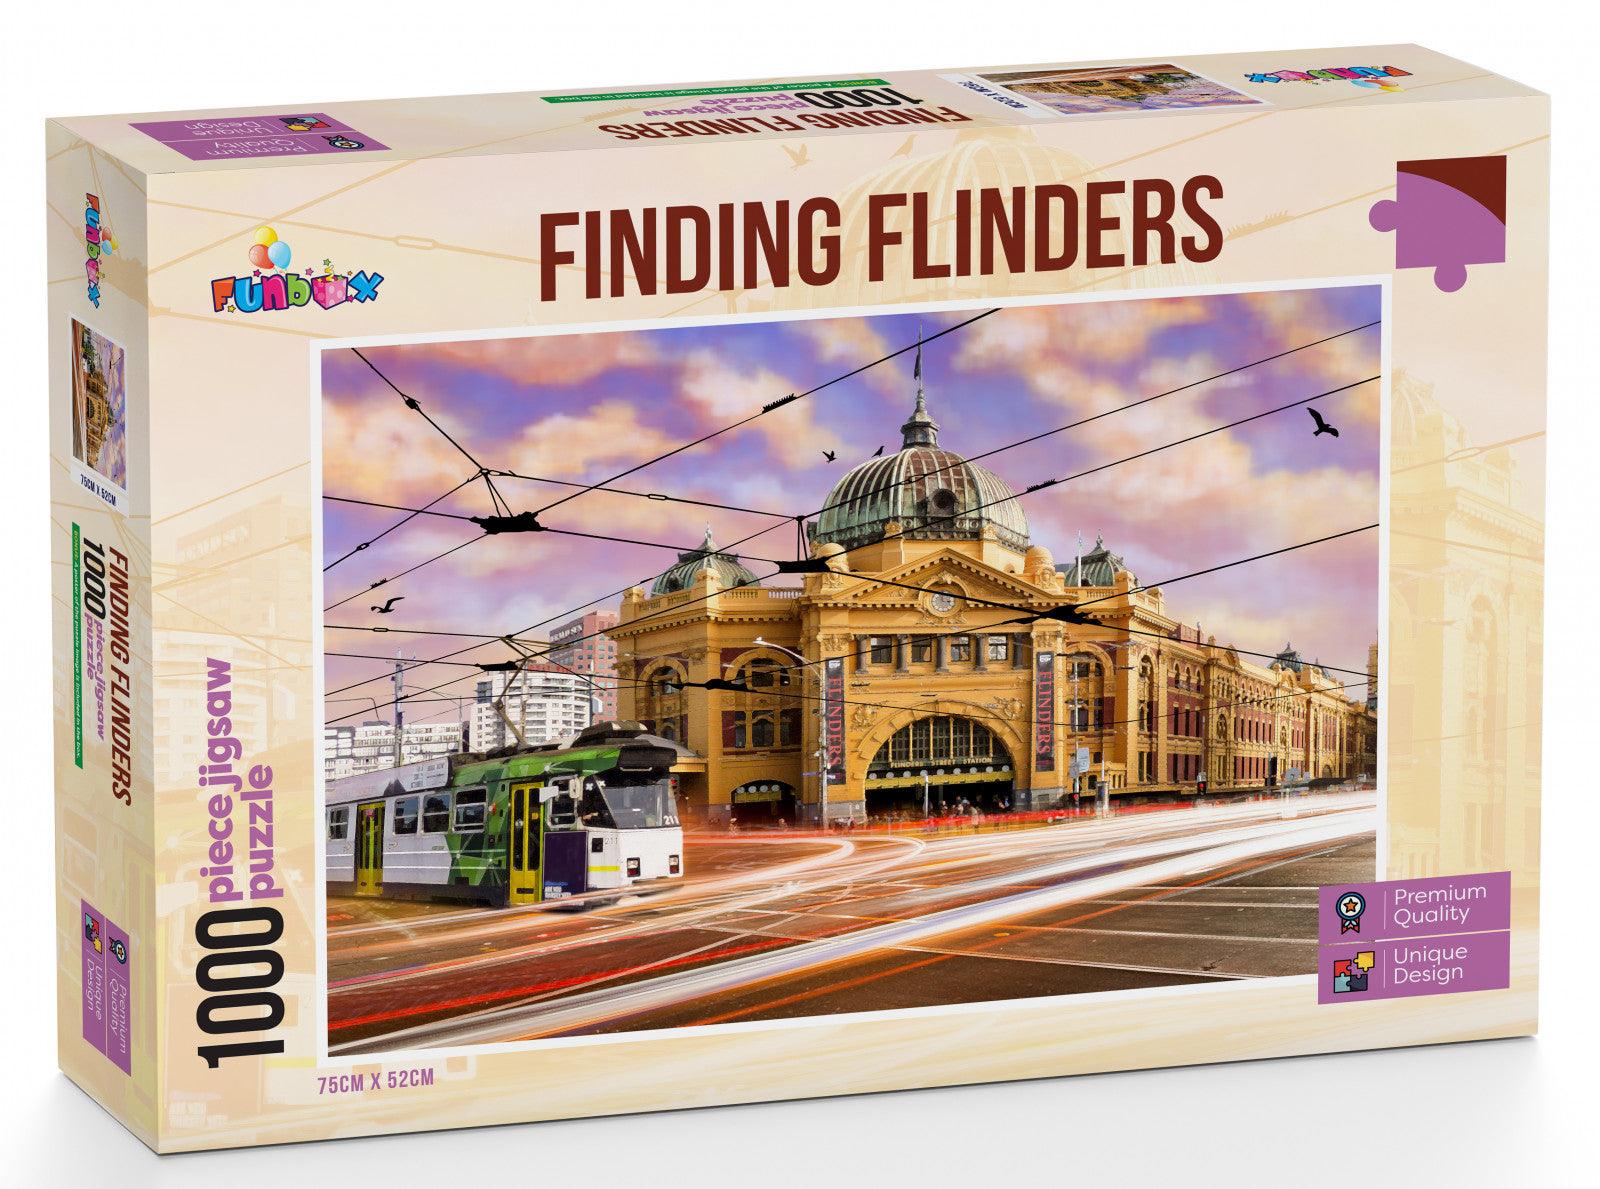 VR-84528 Funbox Puzzle Finding Flinders Puzzle 1,000 pieces - Funbox - Titan Pop Culture